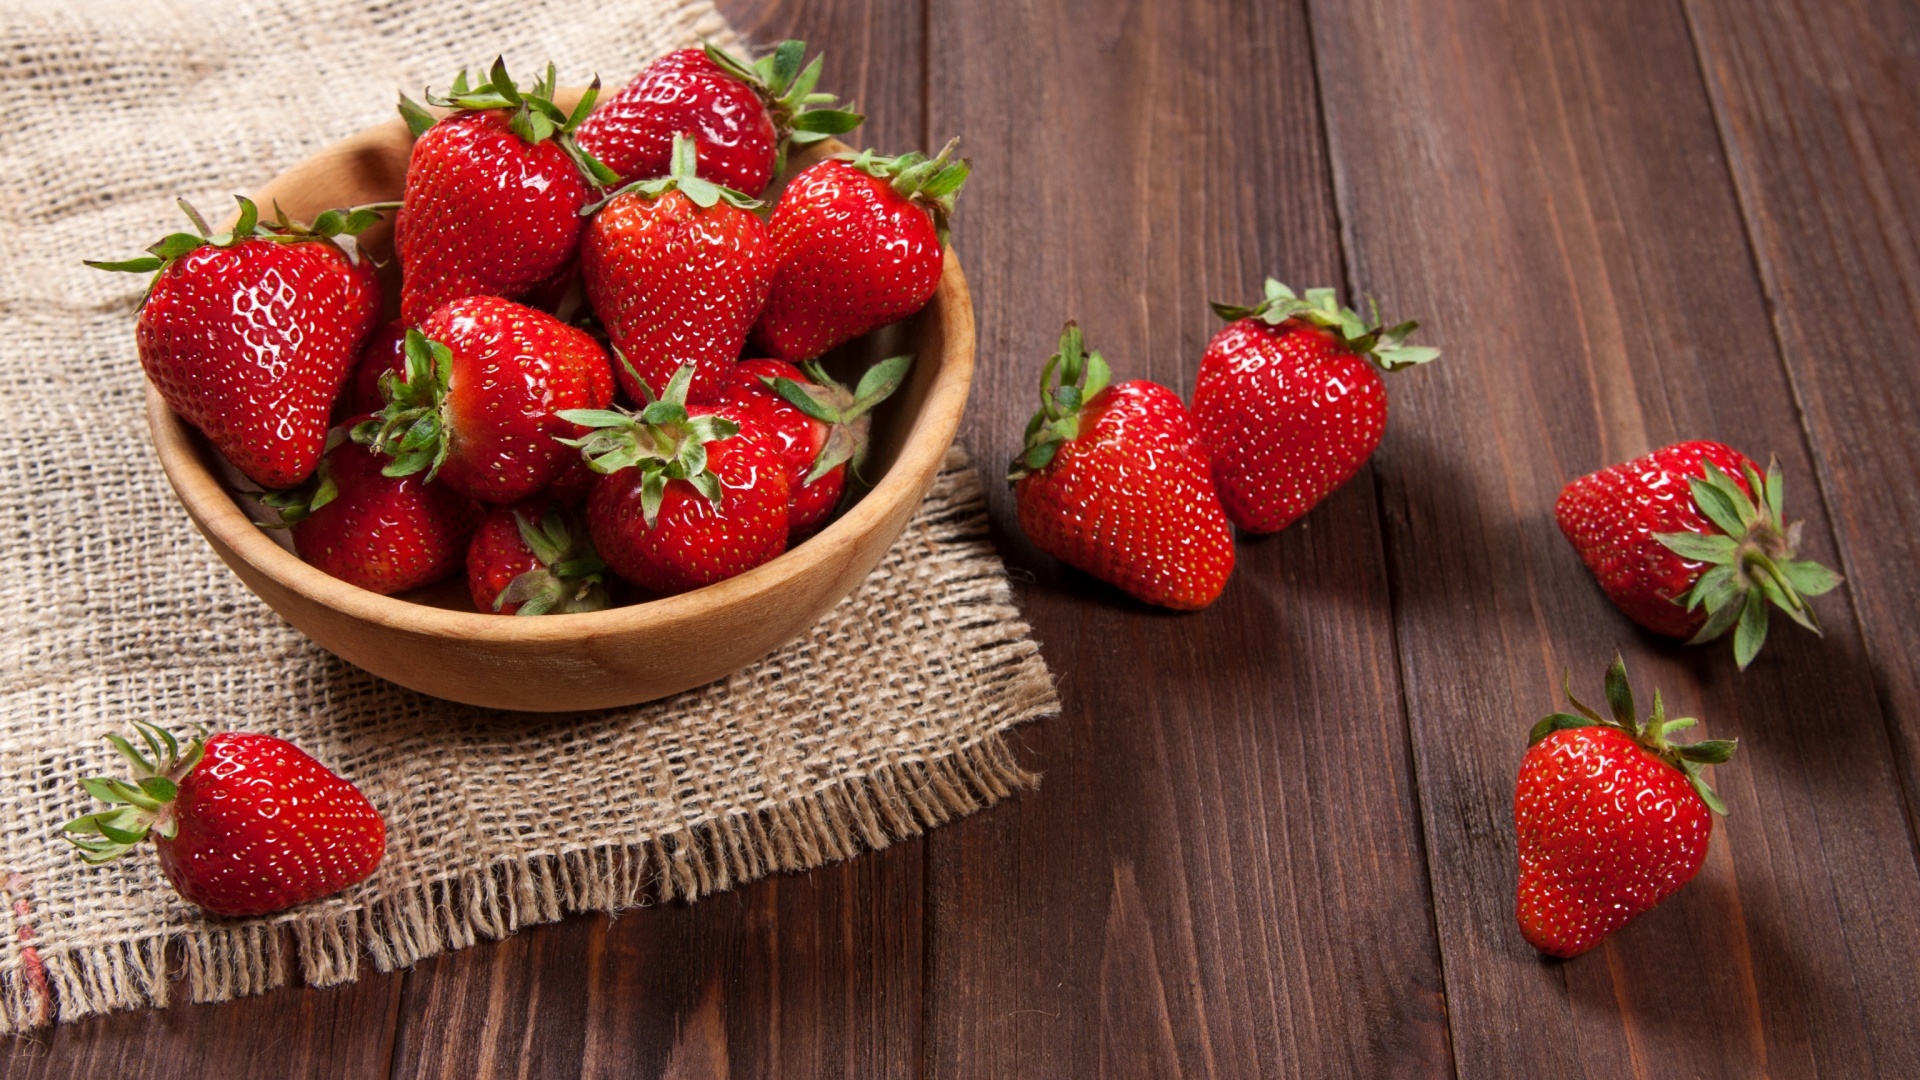 Sfondi Basket fragrant fresh strawberries 1920x1080